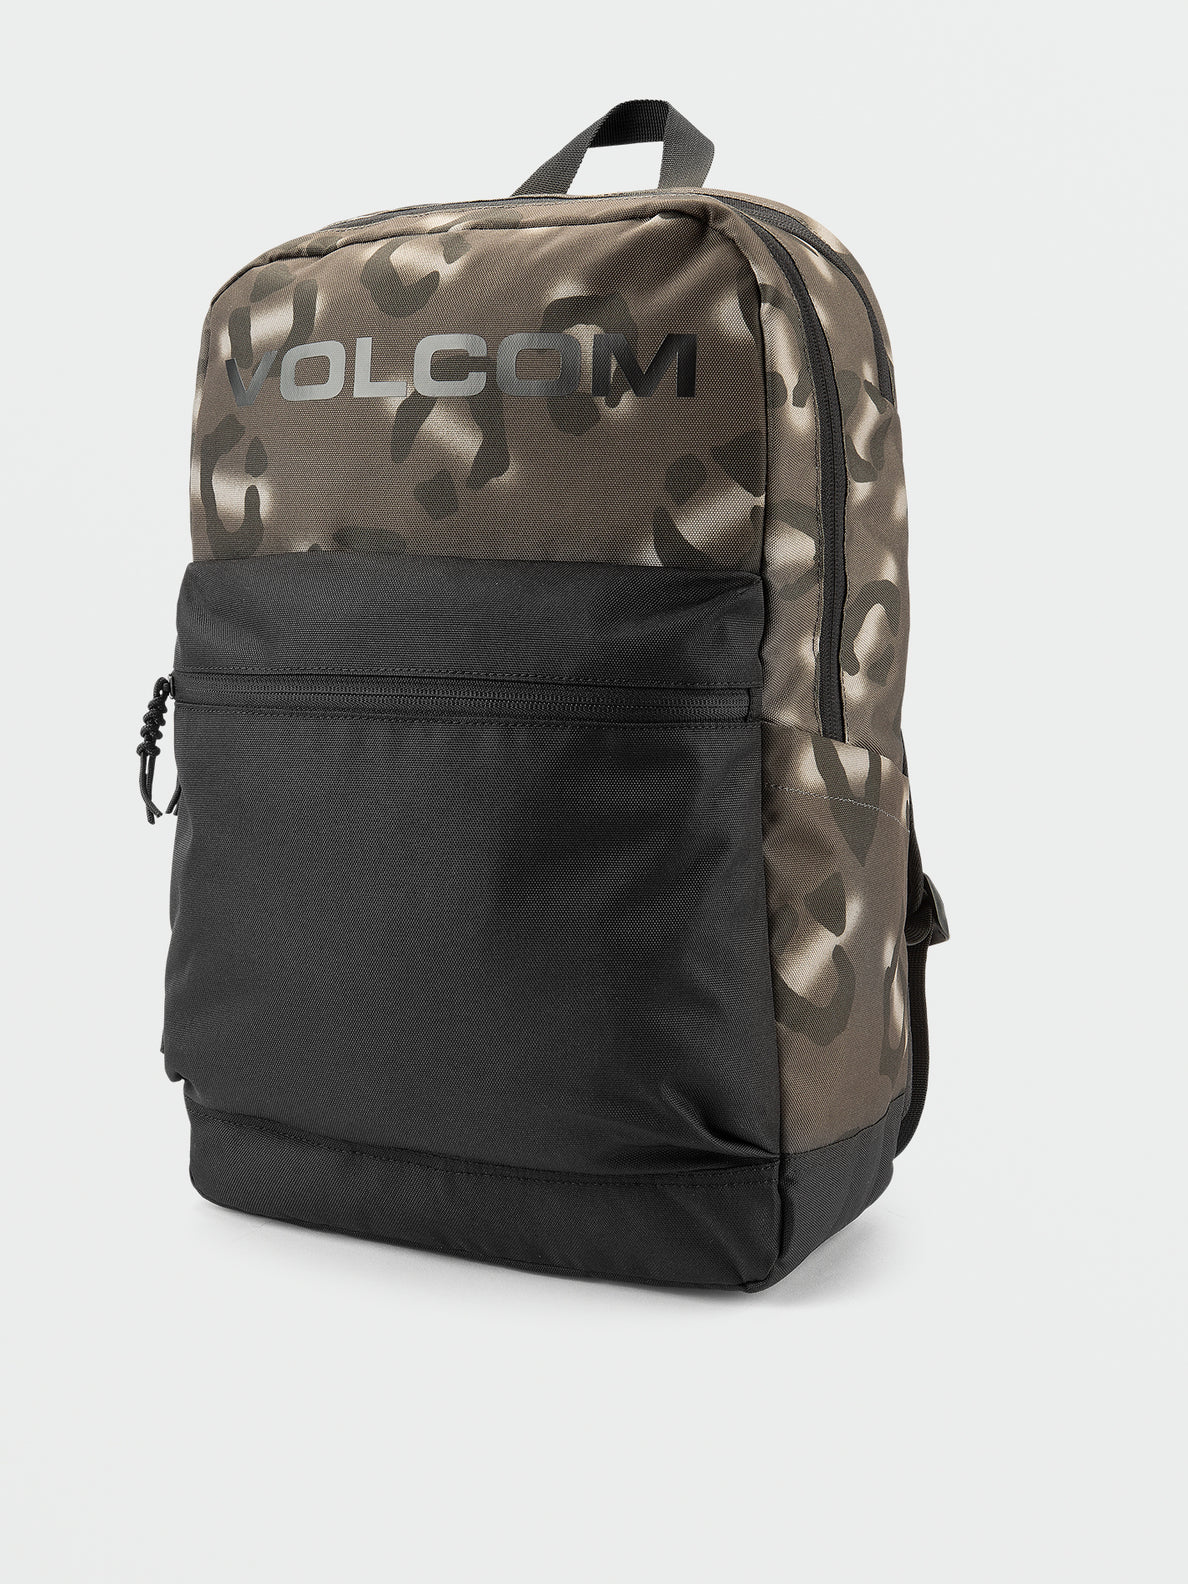 Volcom School Backpack - Rinsed Black